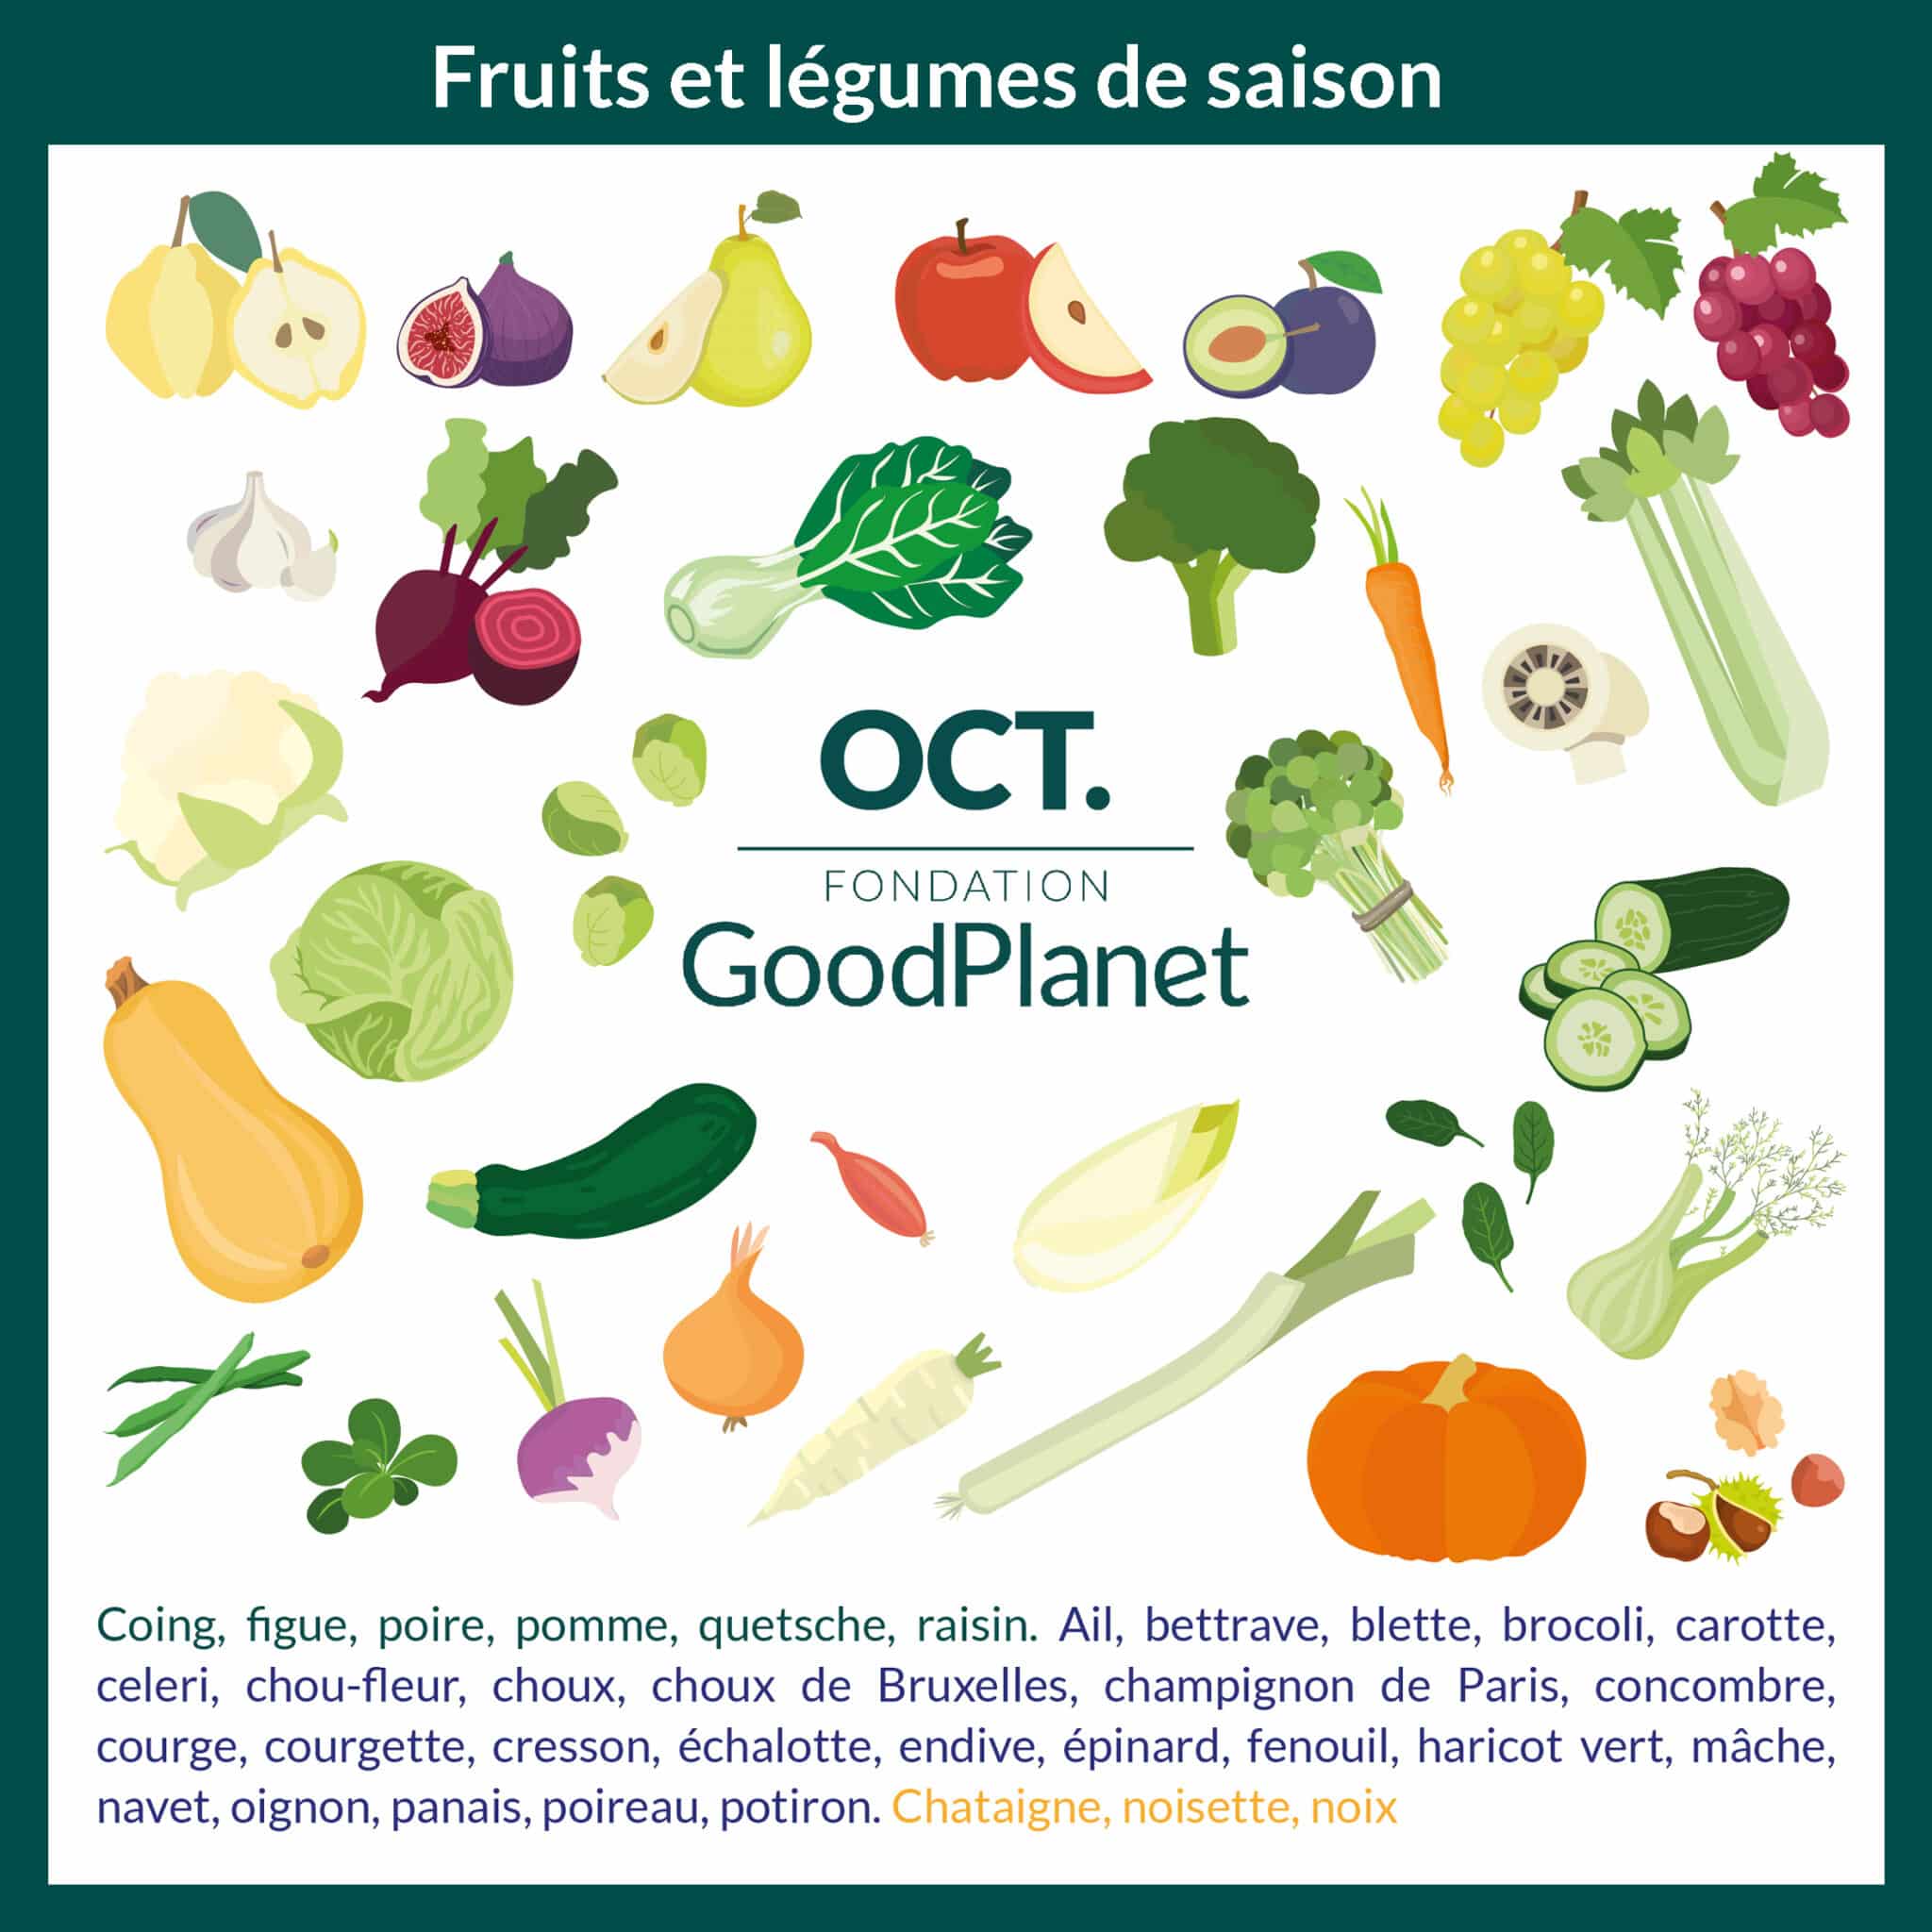 Fruits et légumes de saison d'octobre